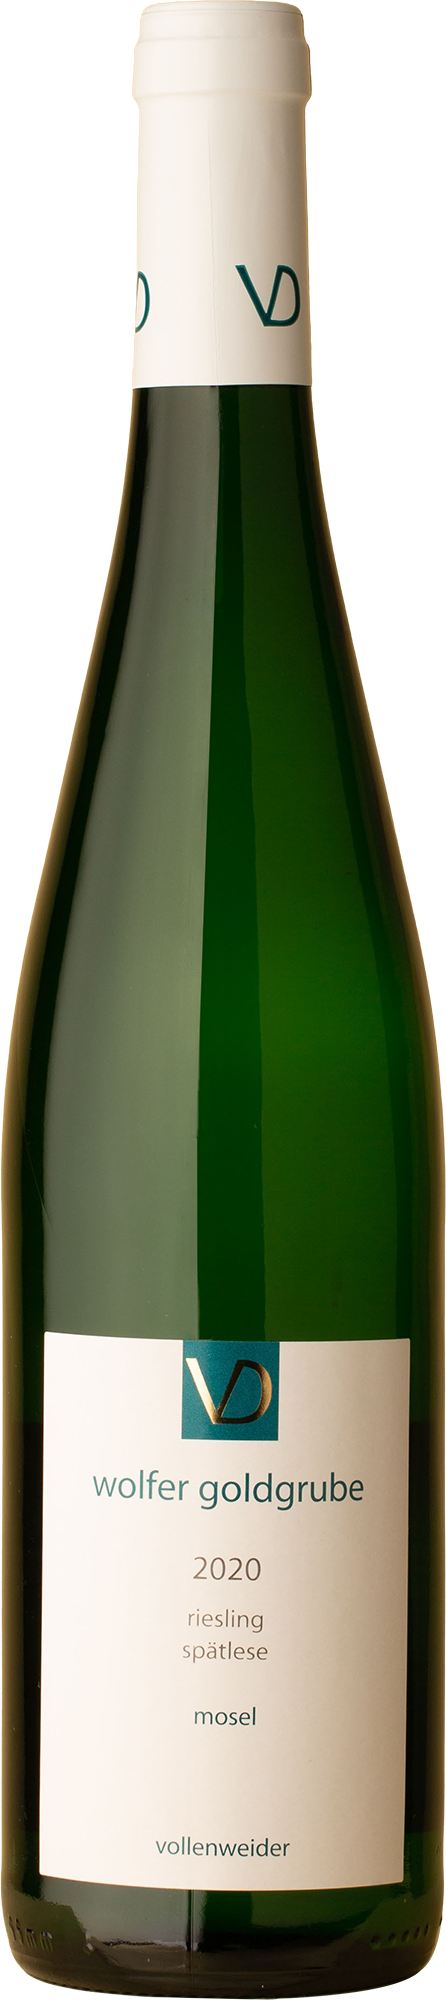 Vollenweider - Wolfer Goldgrube Spatlese Riesling 2020 White Wine